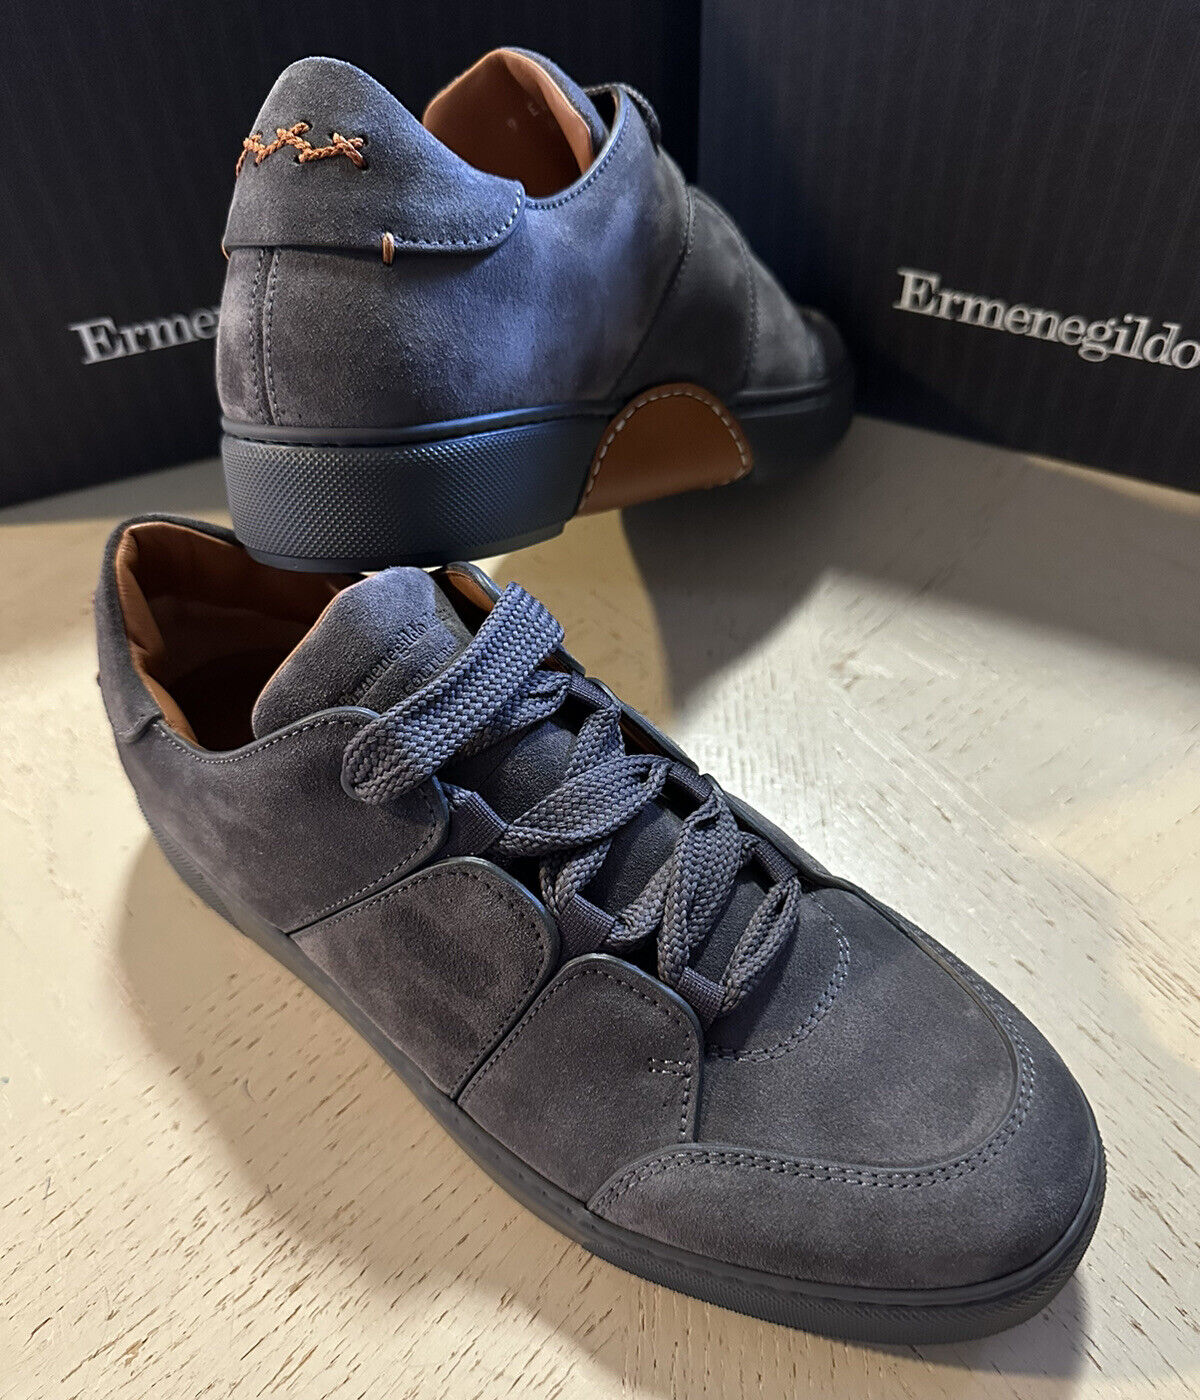 Neue $850 Ermenegildo Zegna Couture Wildleder/Leder-Sneakers Dunkelgrau 7 US/40 Eu